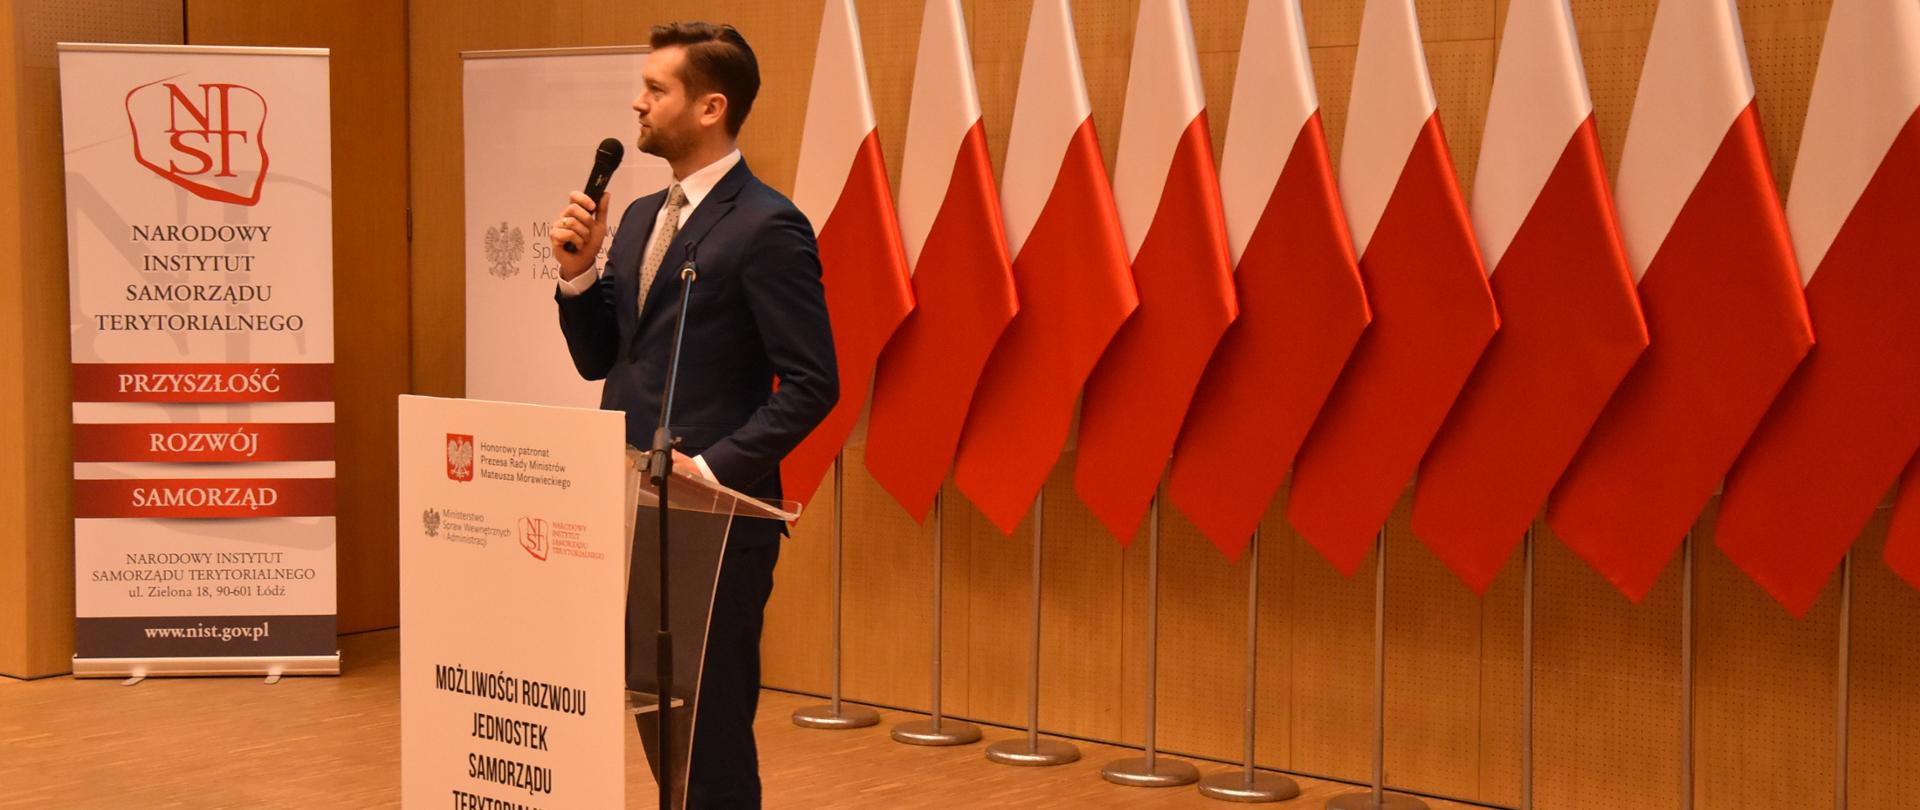 Wiceminister Kamil Bortniczuk stoi przy mównicy, w tle dziesięć biało-czerwonych flag i banery konferecyjne.